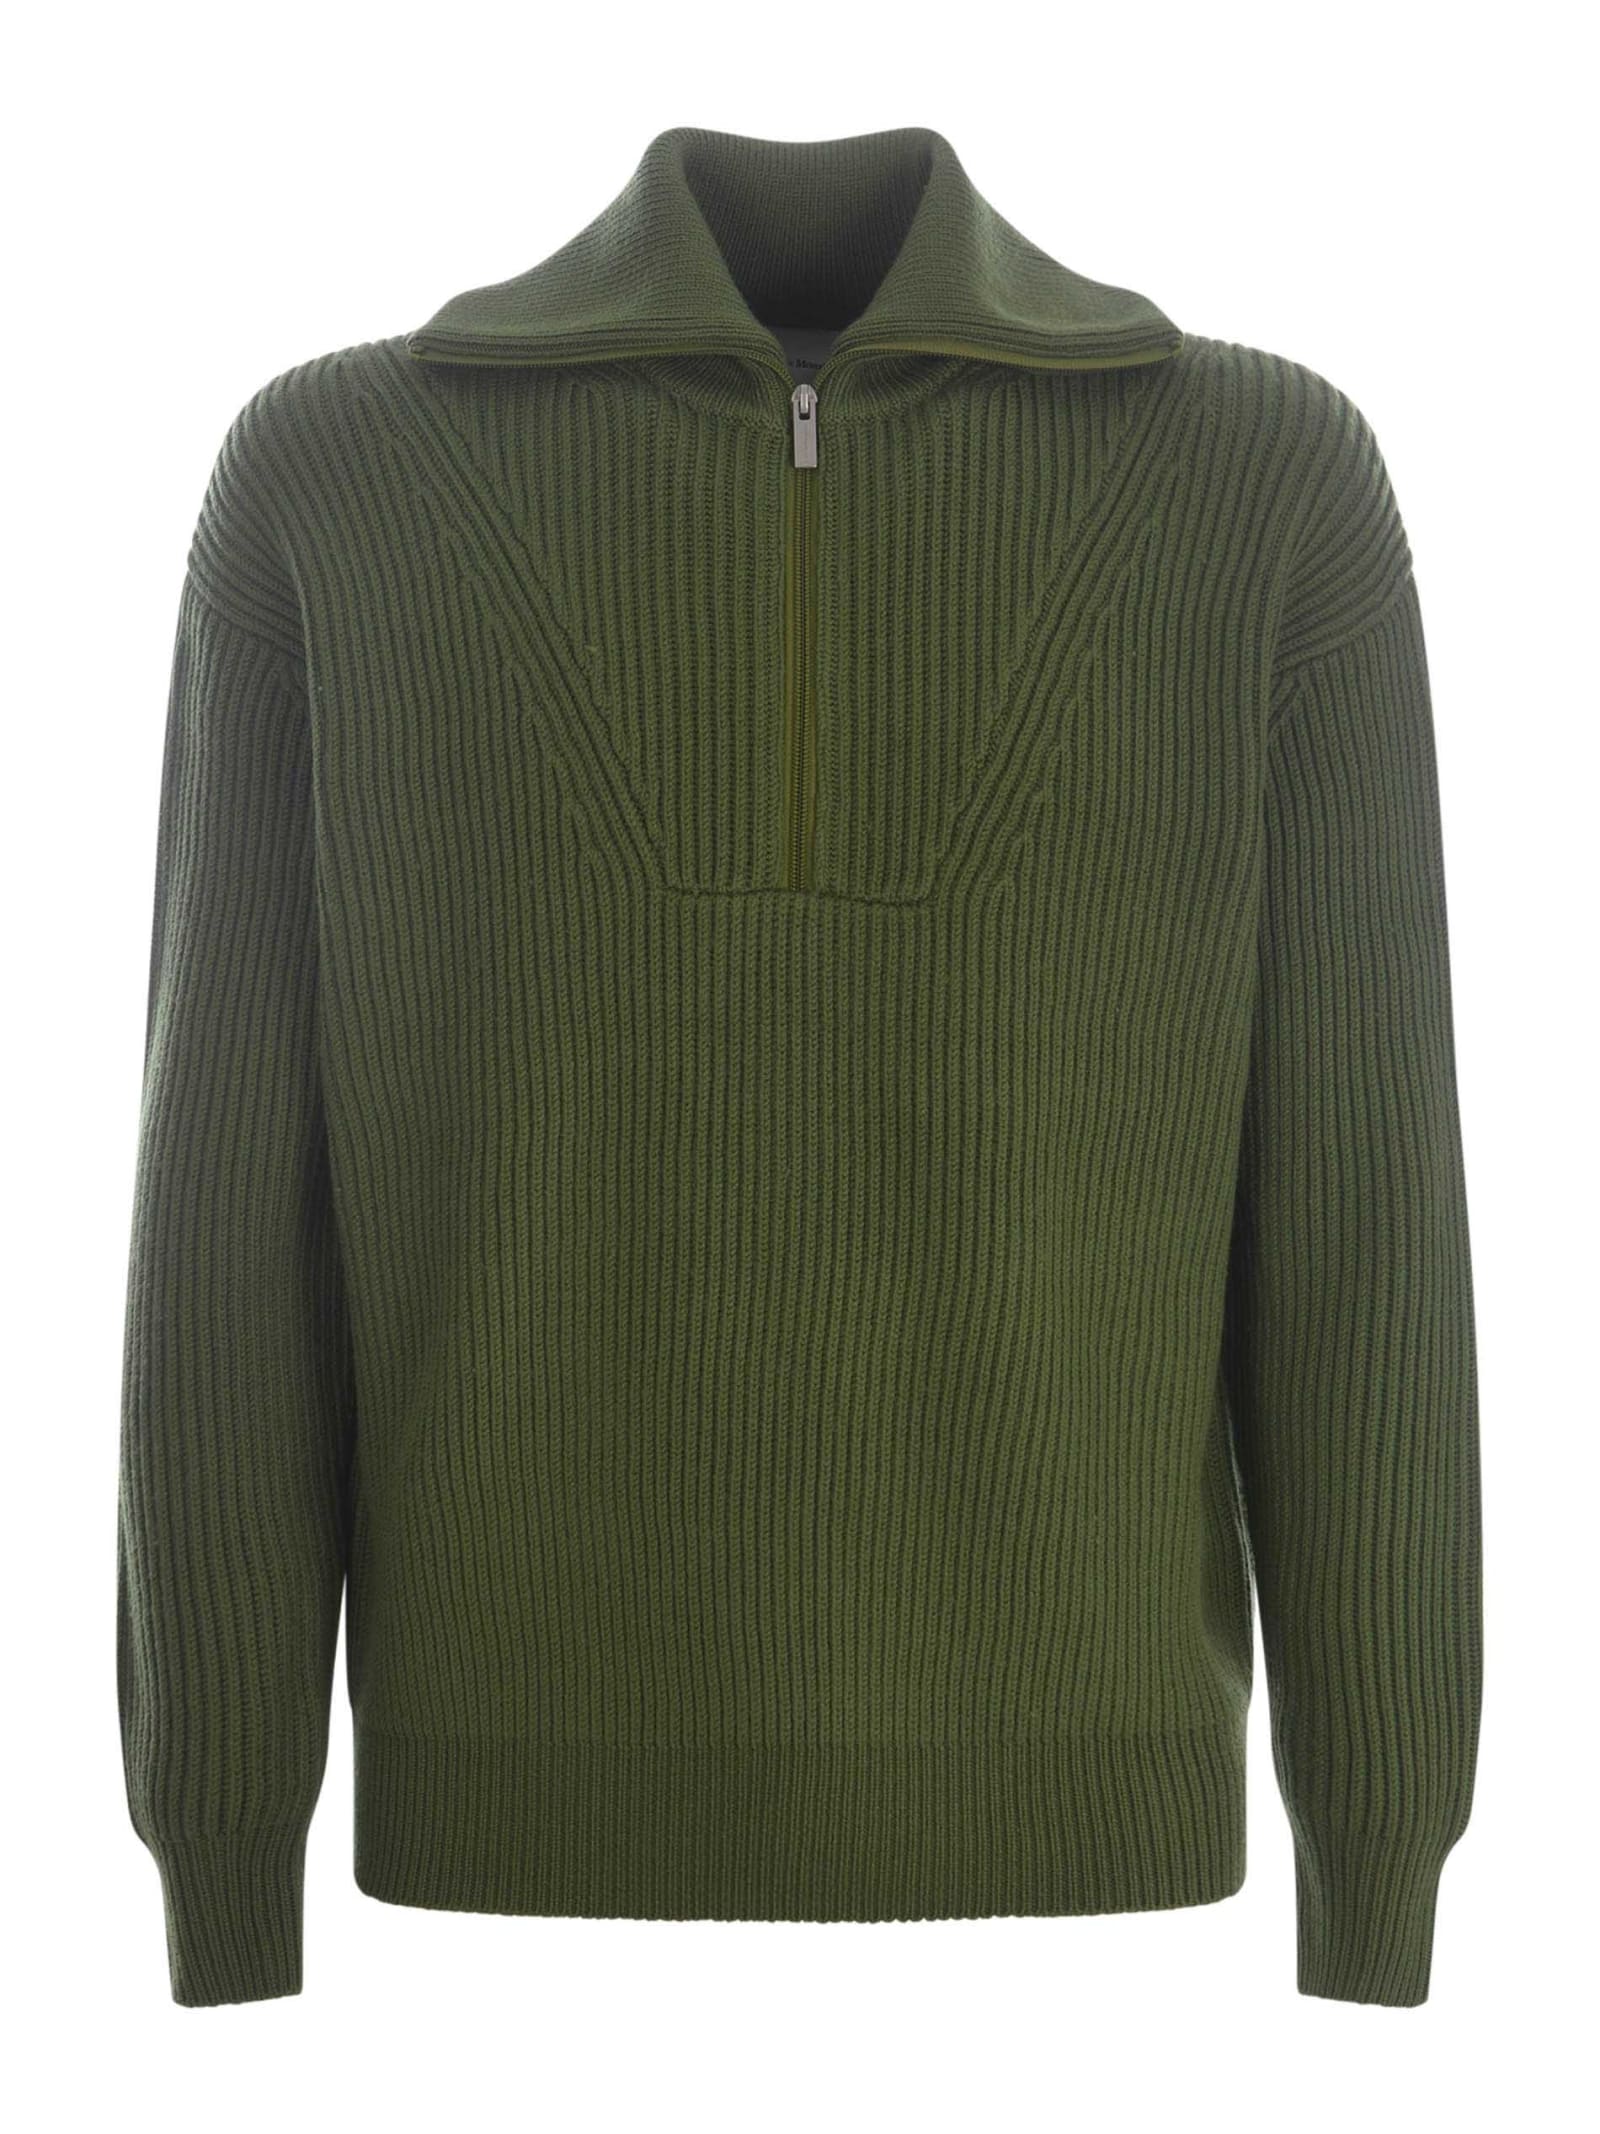 Shop Drôle De Monsieur Sweater Drole De Monsieur La Maille Zippé In Merino Wool In Verde